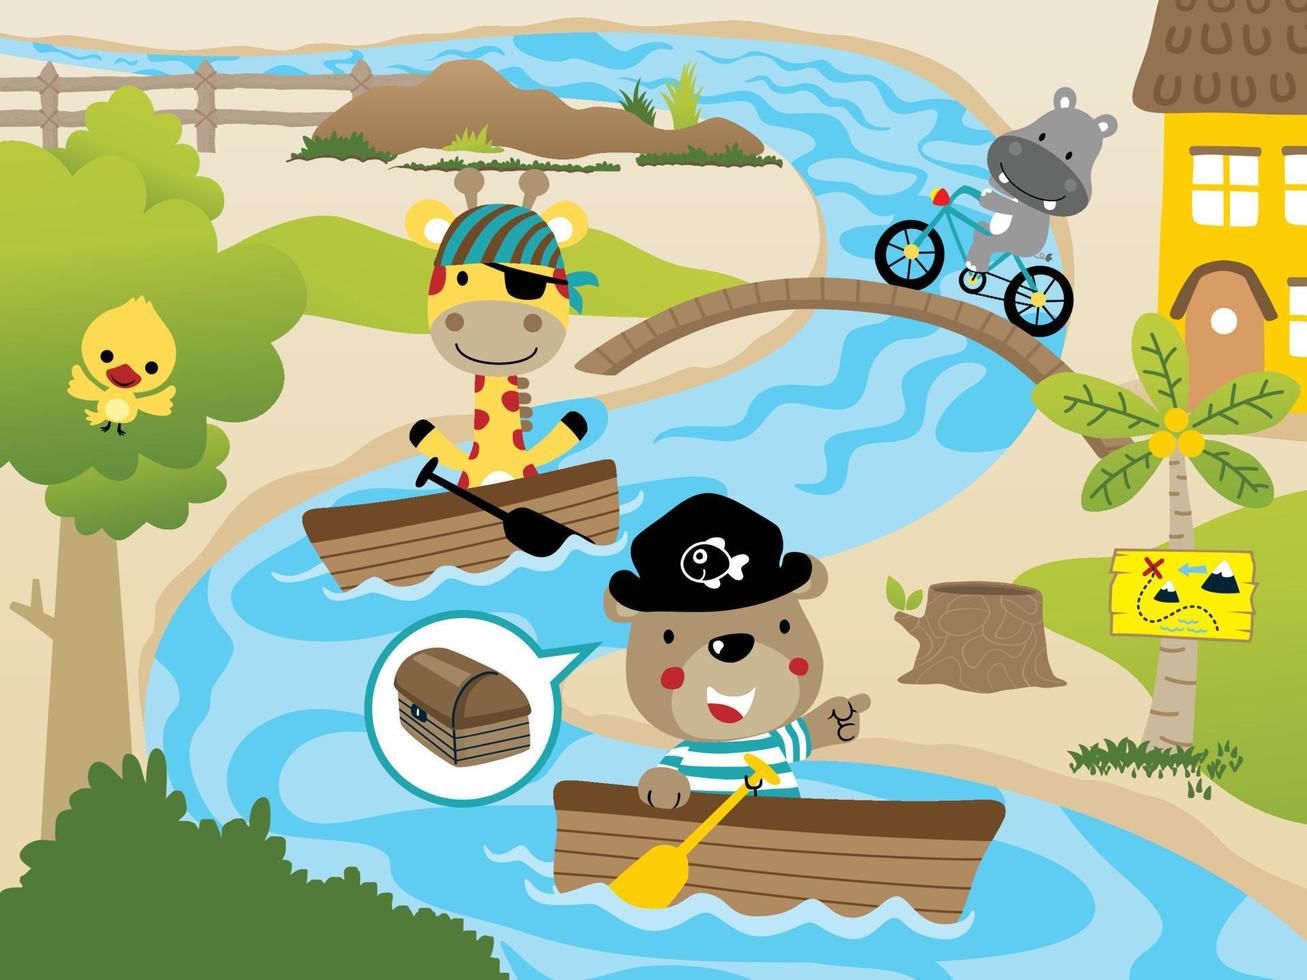 divertente animali cartone animato nel pirata costume su barca a remi nel fiume, ippopotamo equitazione bicicletta, rurale scena illustrazione vettore